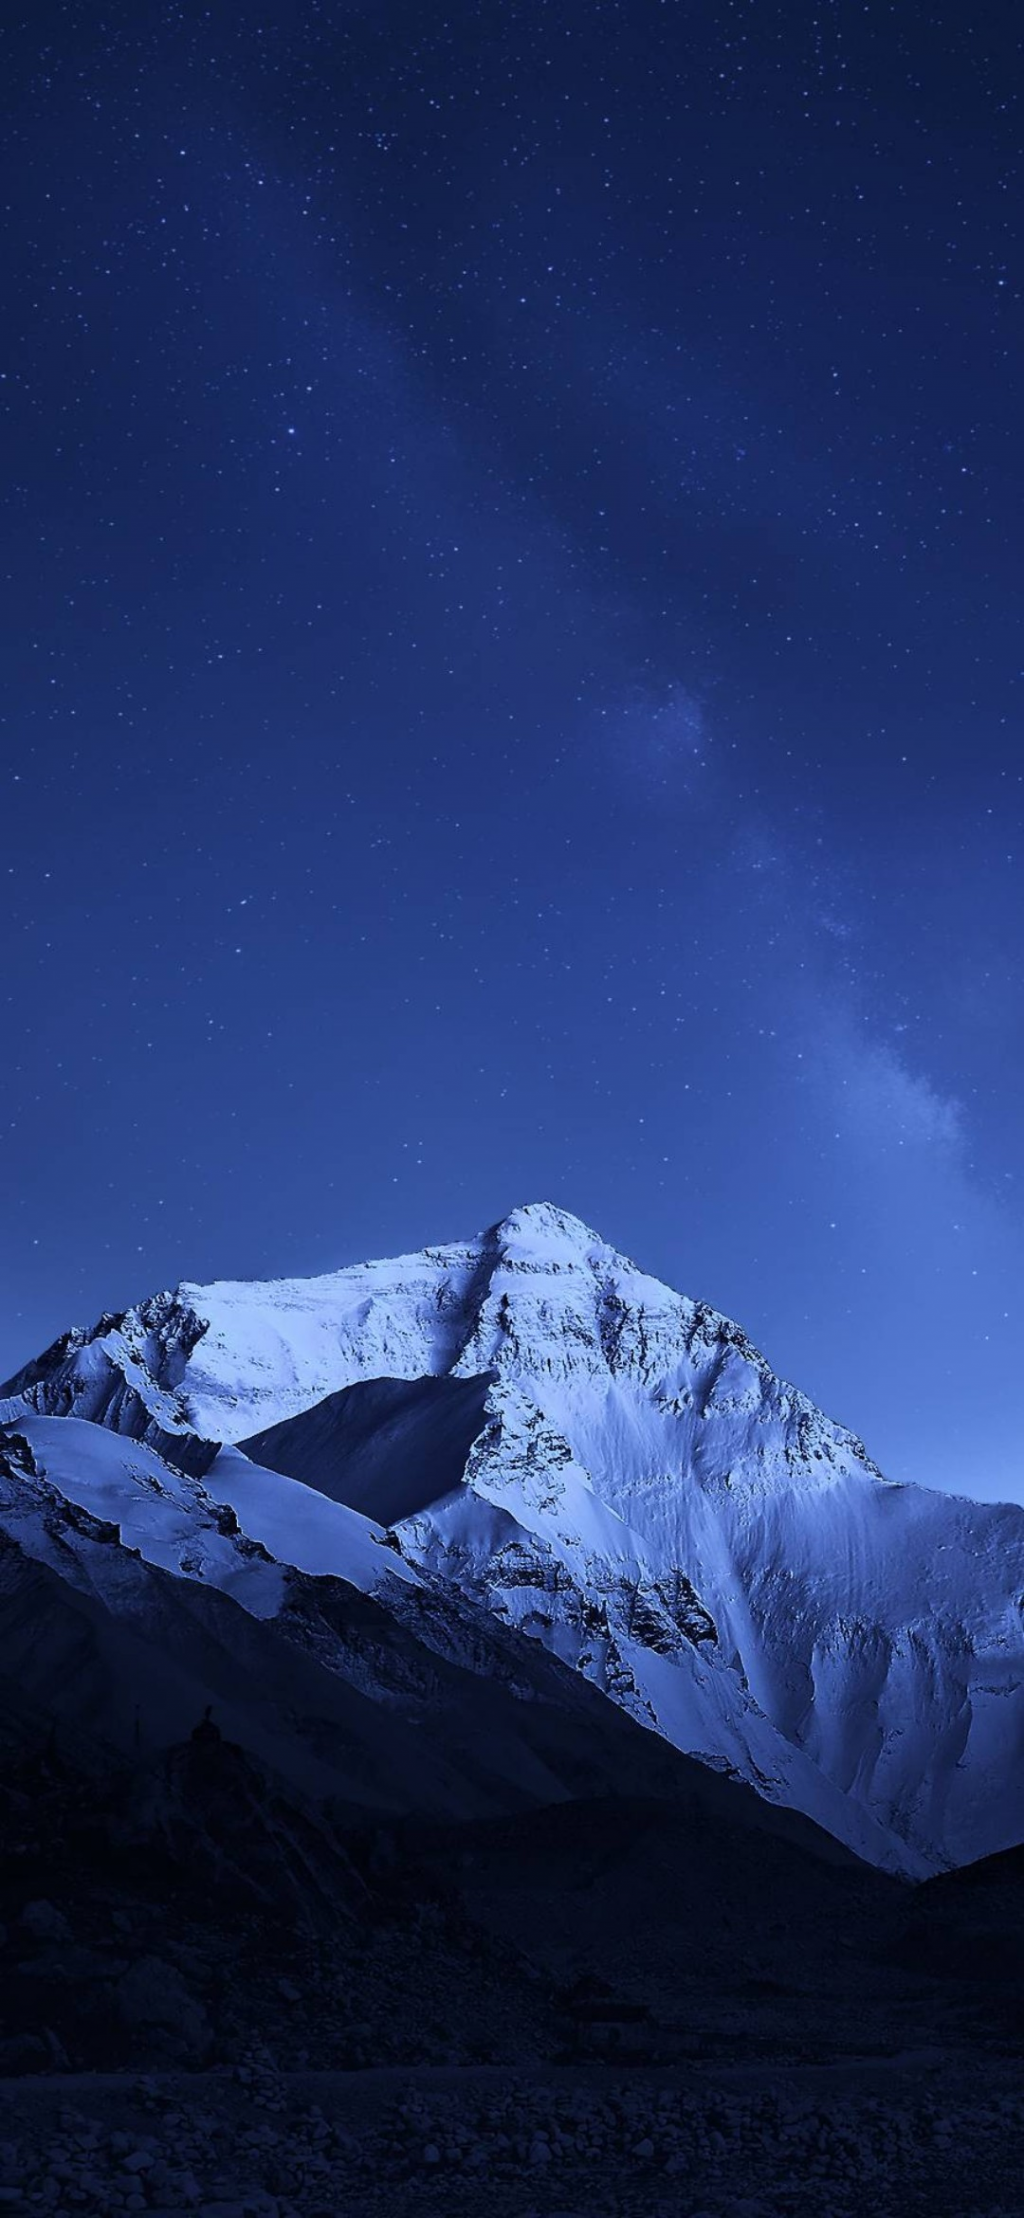 夜幕下的雪山与繁星